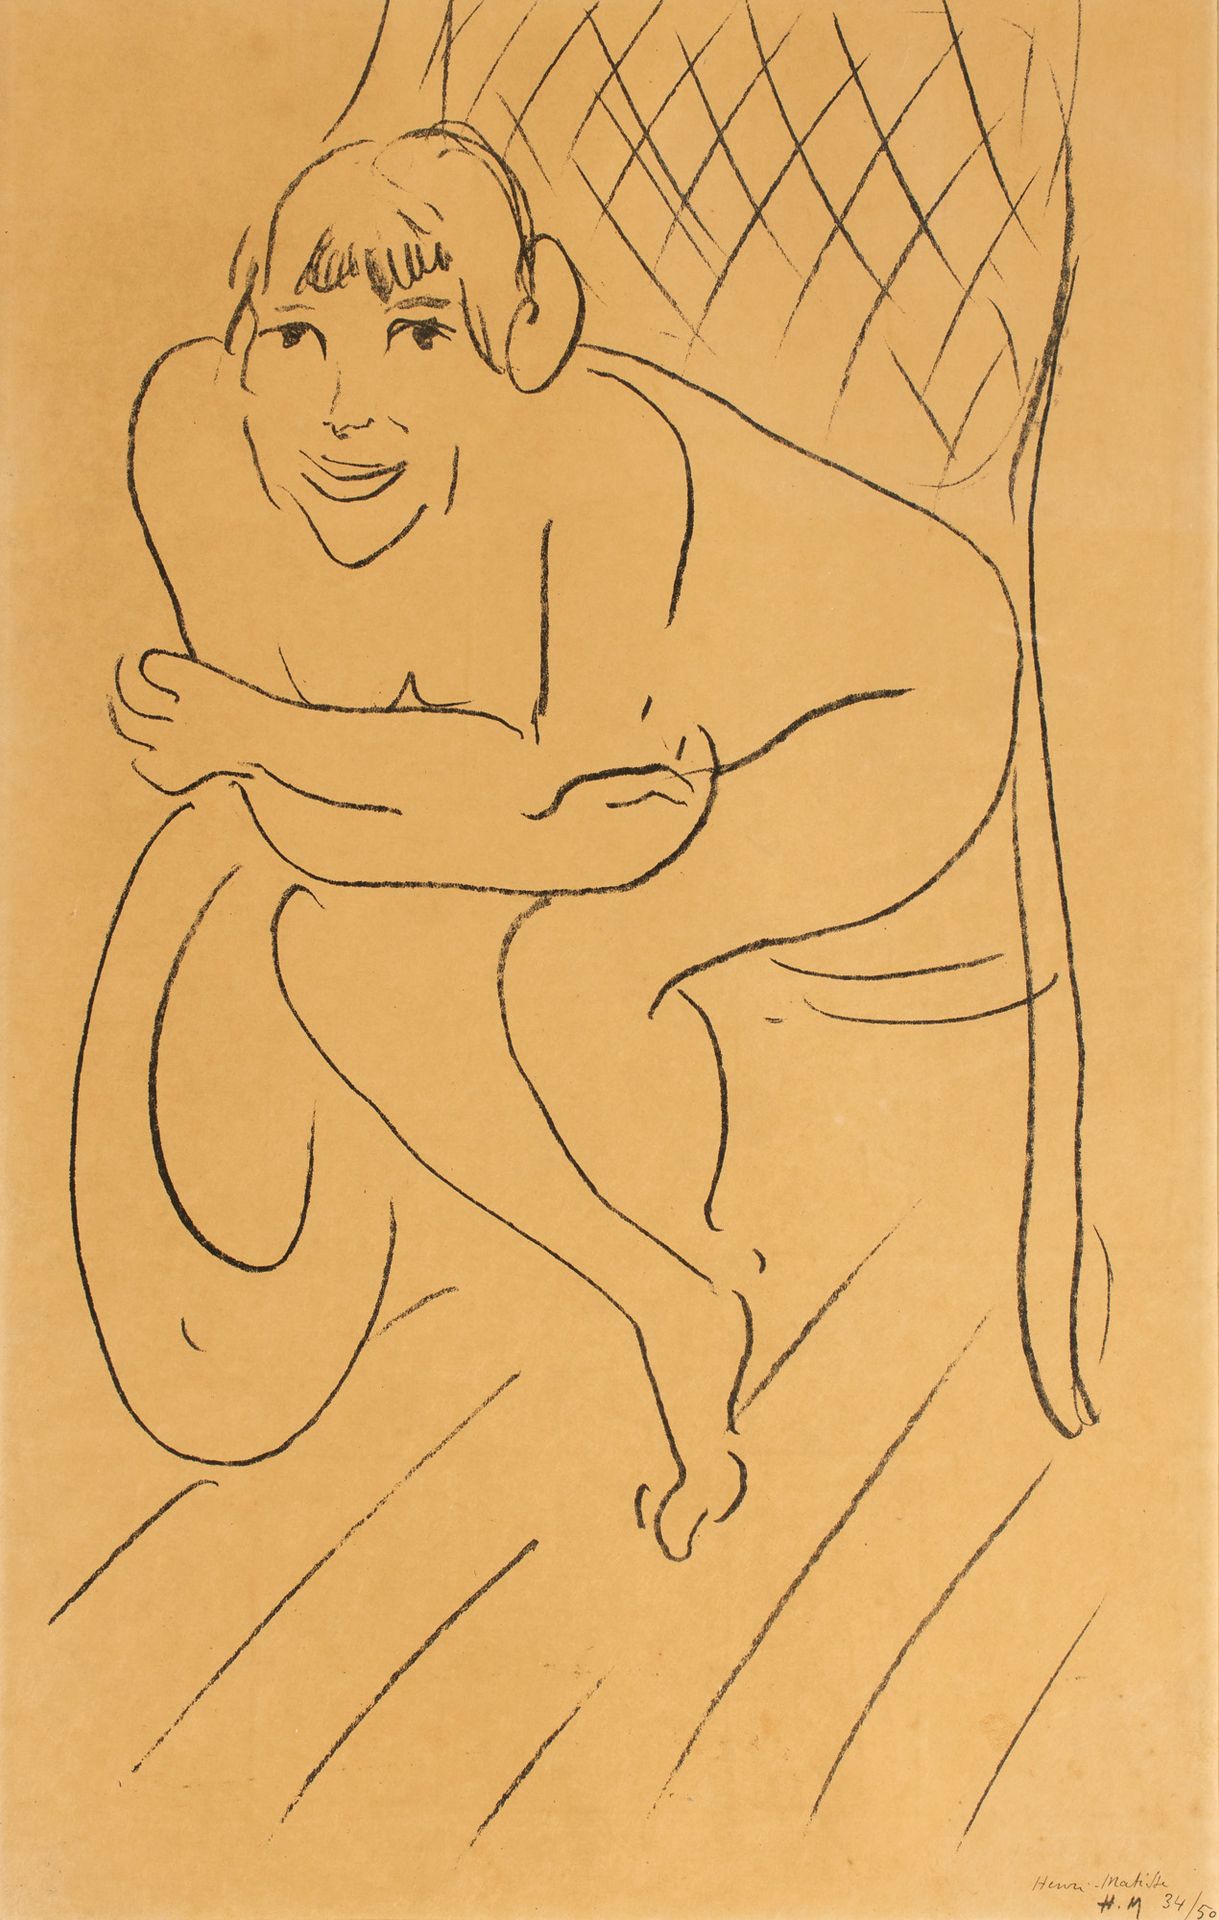 Henri MATISSE (1869-1954) Henri MATISSE (1869-1954)

Desnudo con mecedora, 1913
&hellip;